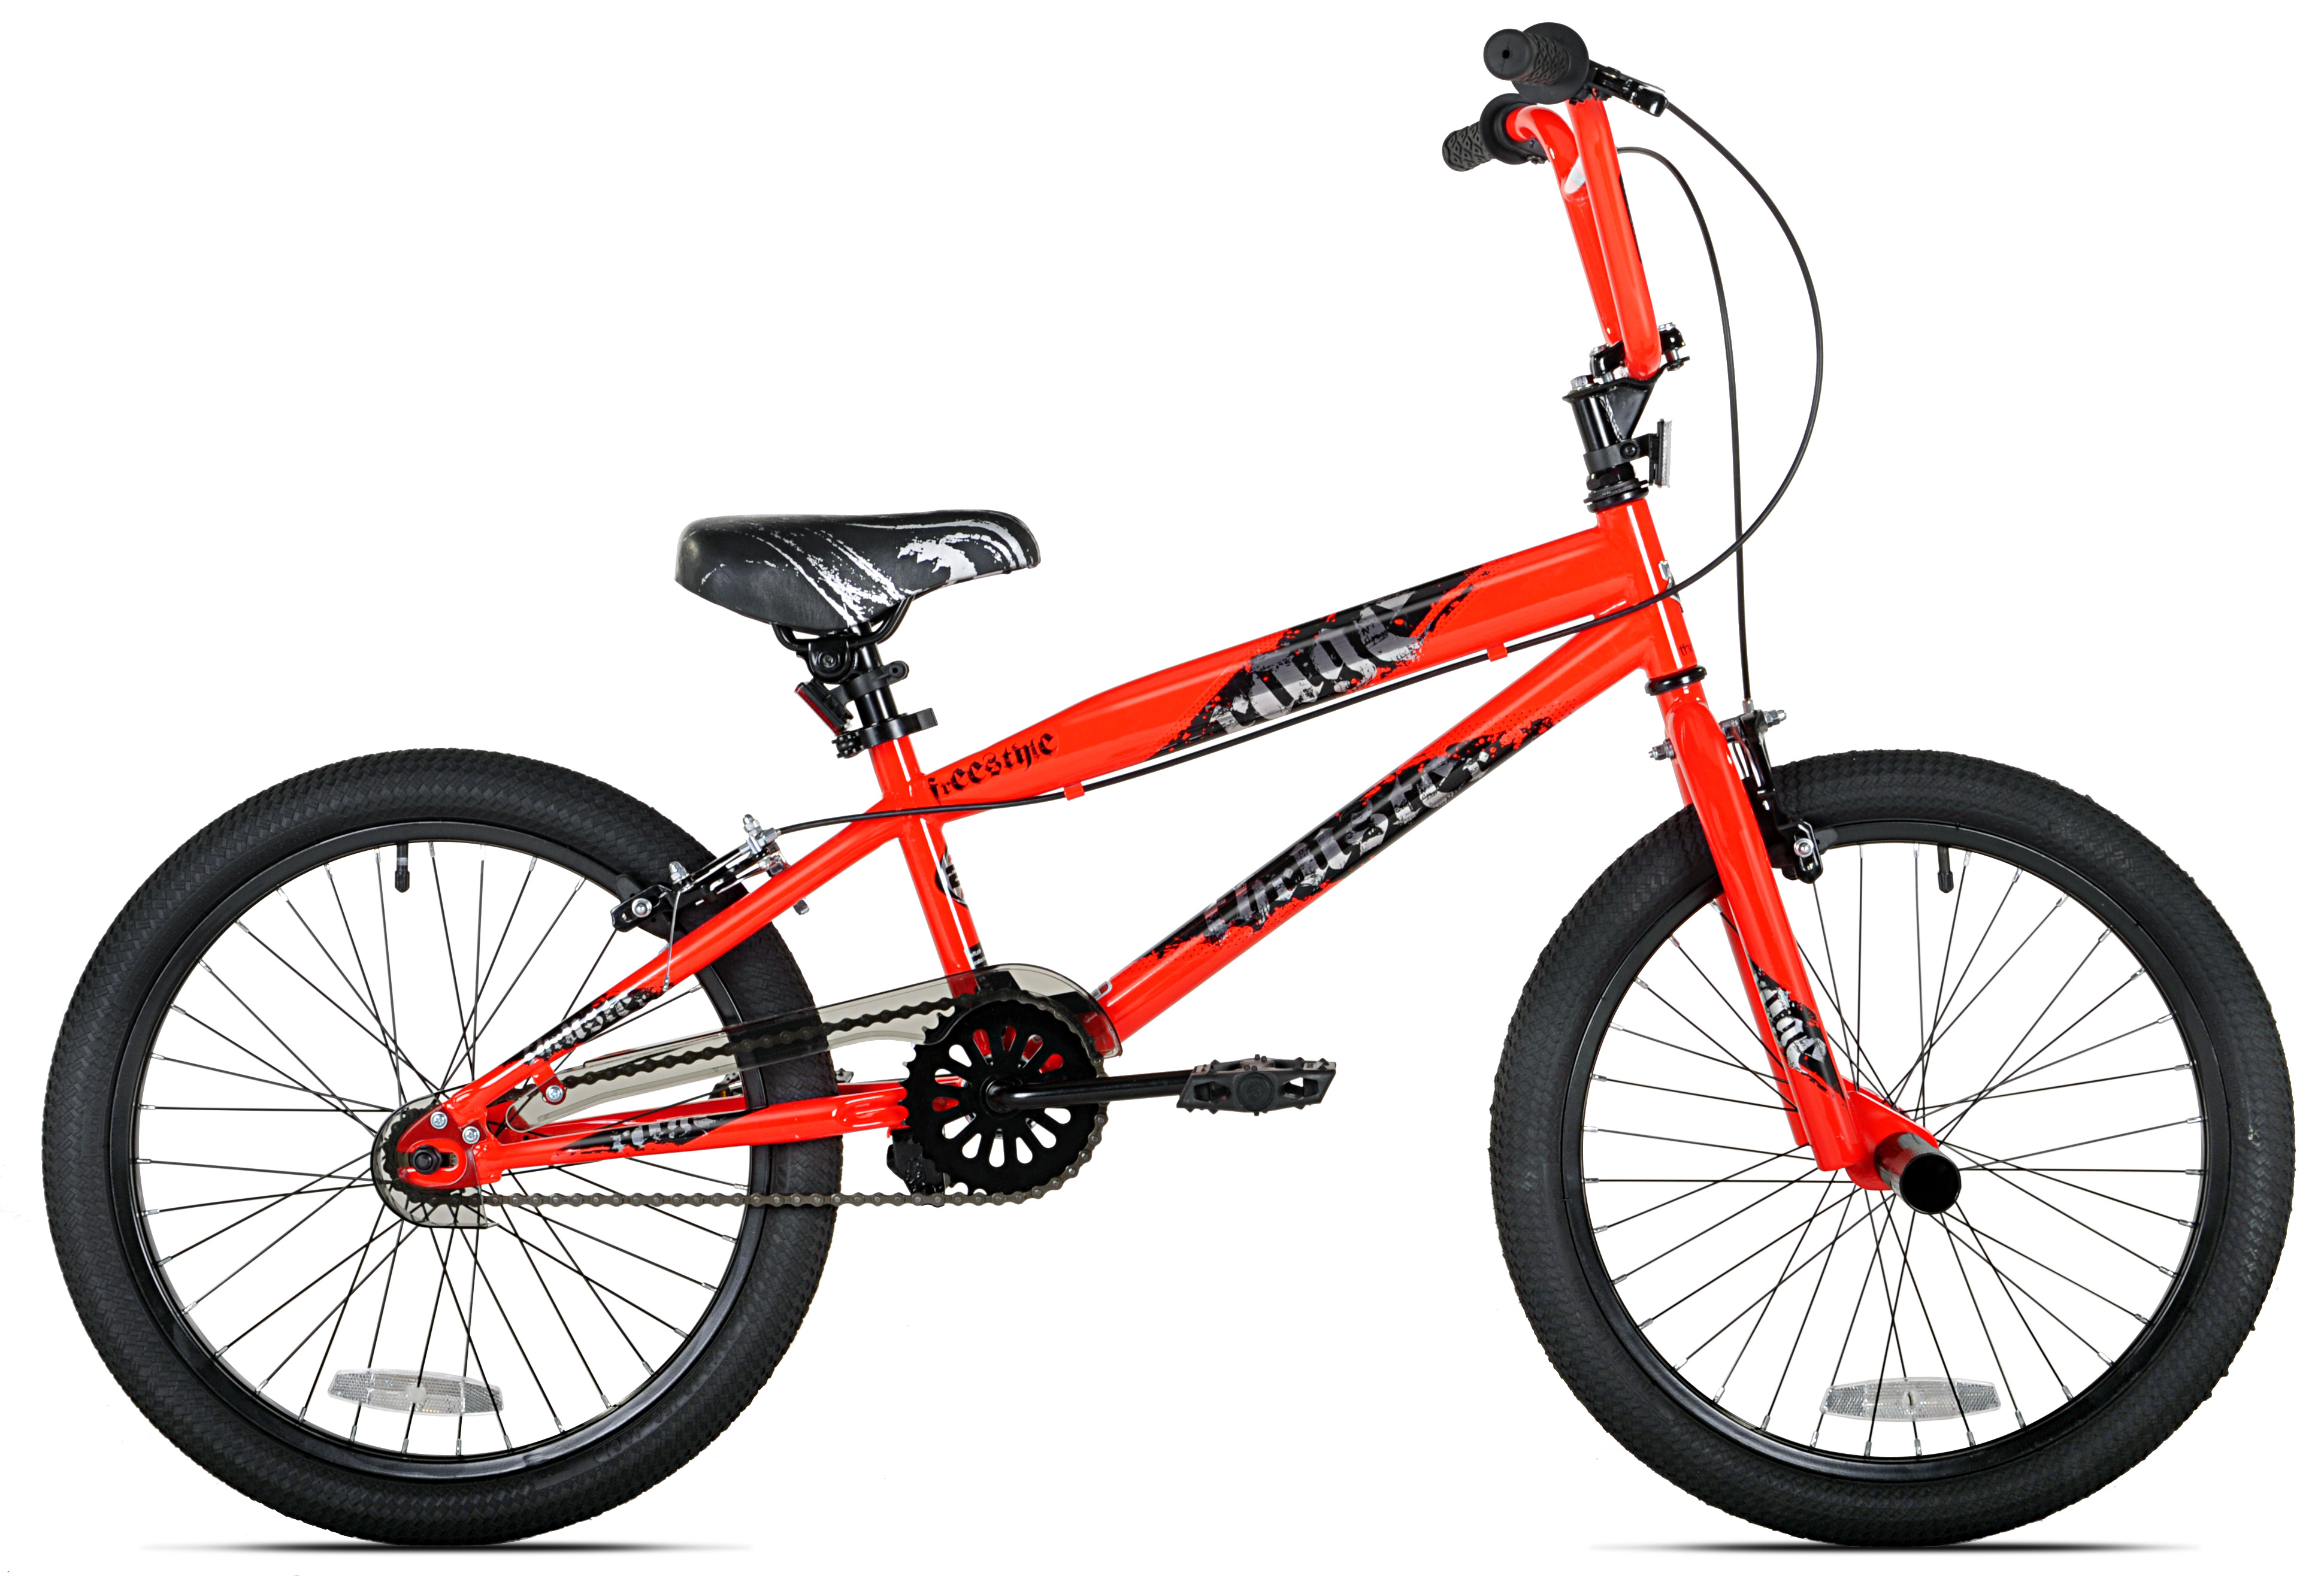 Kent 20" Thruster Rage BMX Boy's Bike, Orange - image 5 of 7